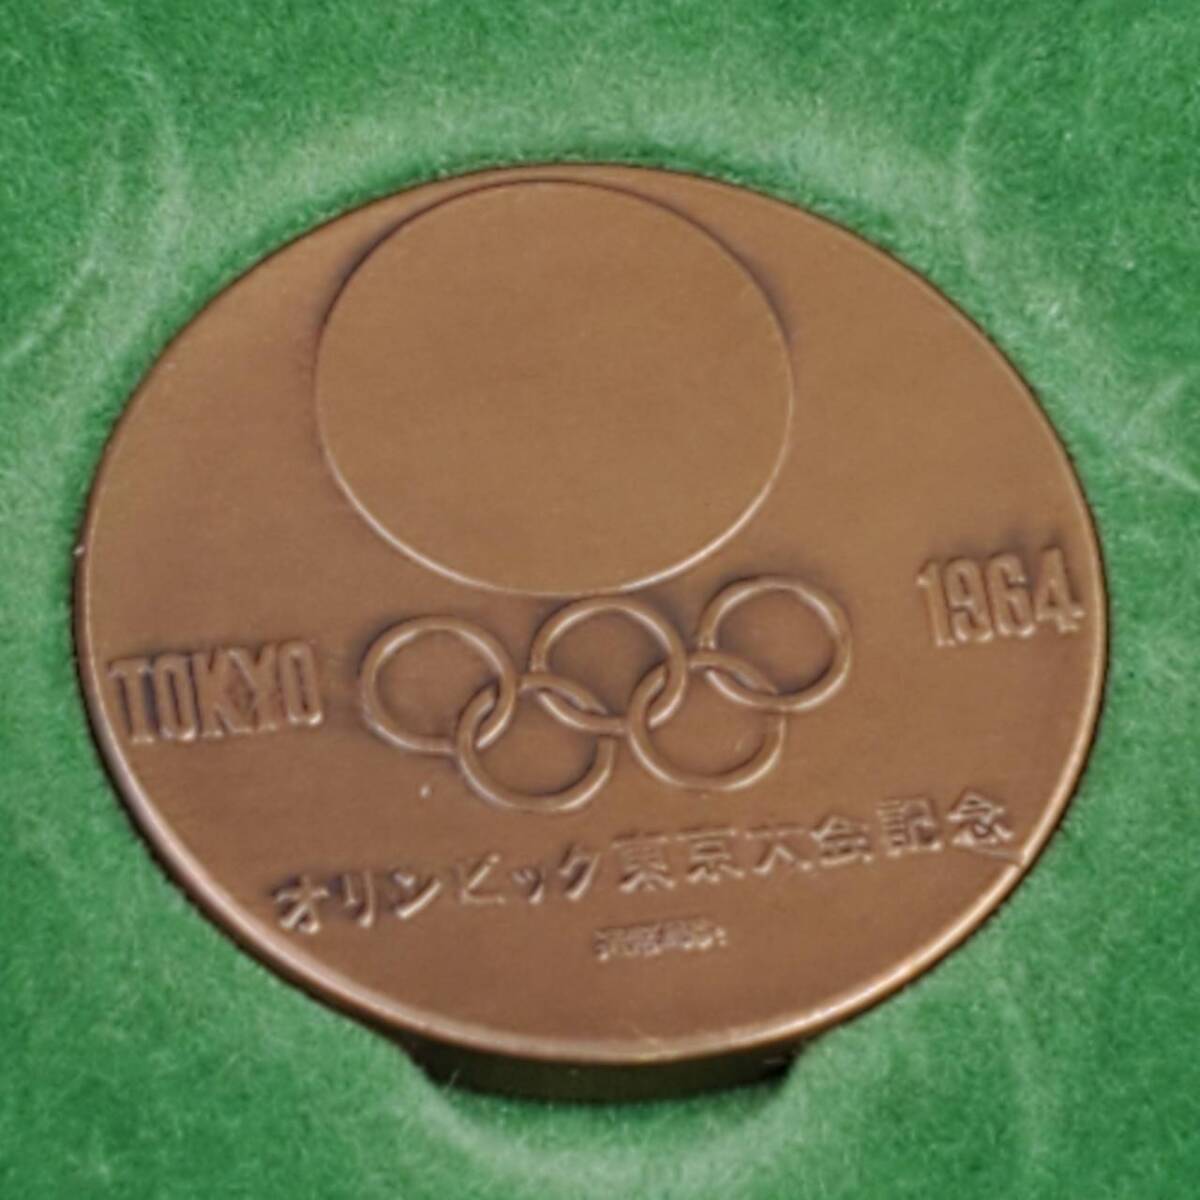 #8863 五輪 オリンピック 記念メダル まとめ 総6枚 1964年 東京オリンピック 4枚 /1980年 モスクワオリンピック 2枚 銅 丹銅 IOC _画像8